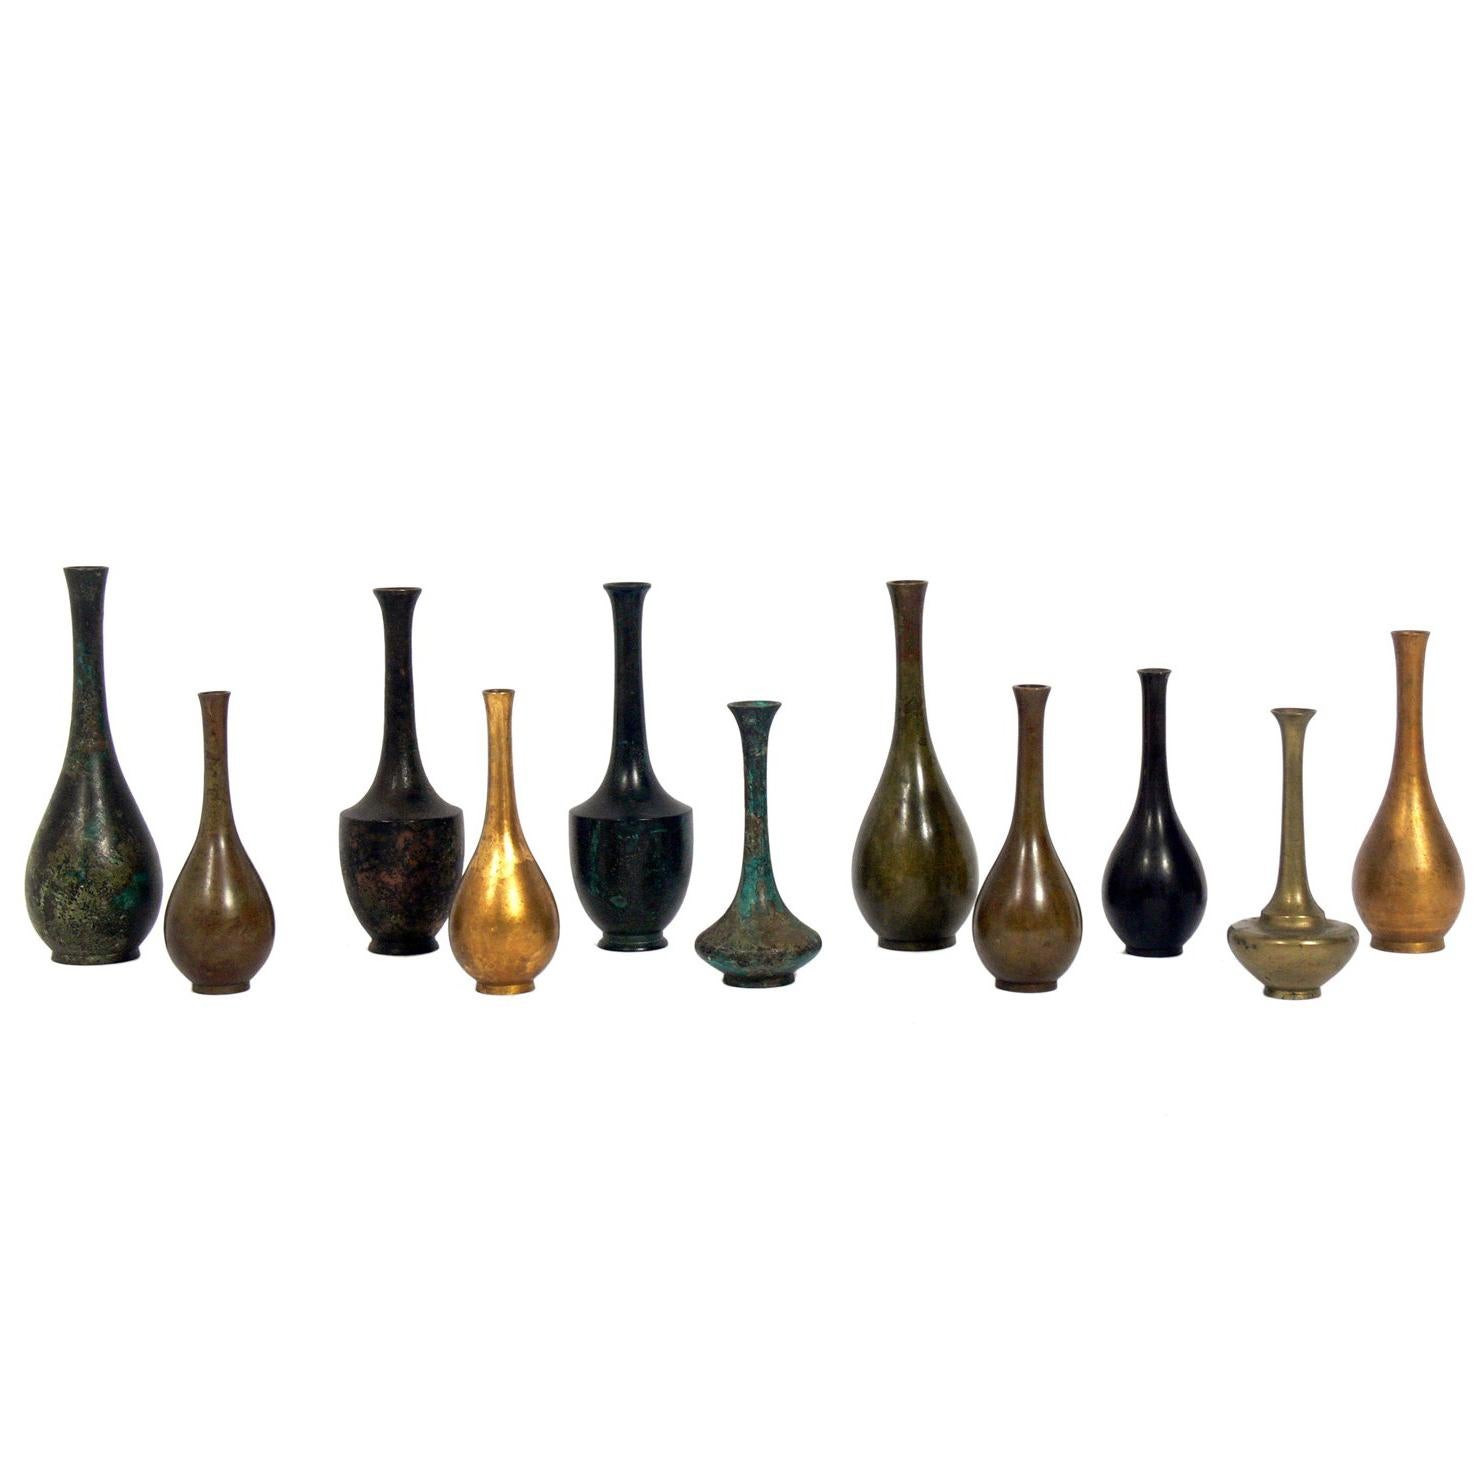 Kollektion von elf japanischen Bronzevasen